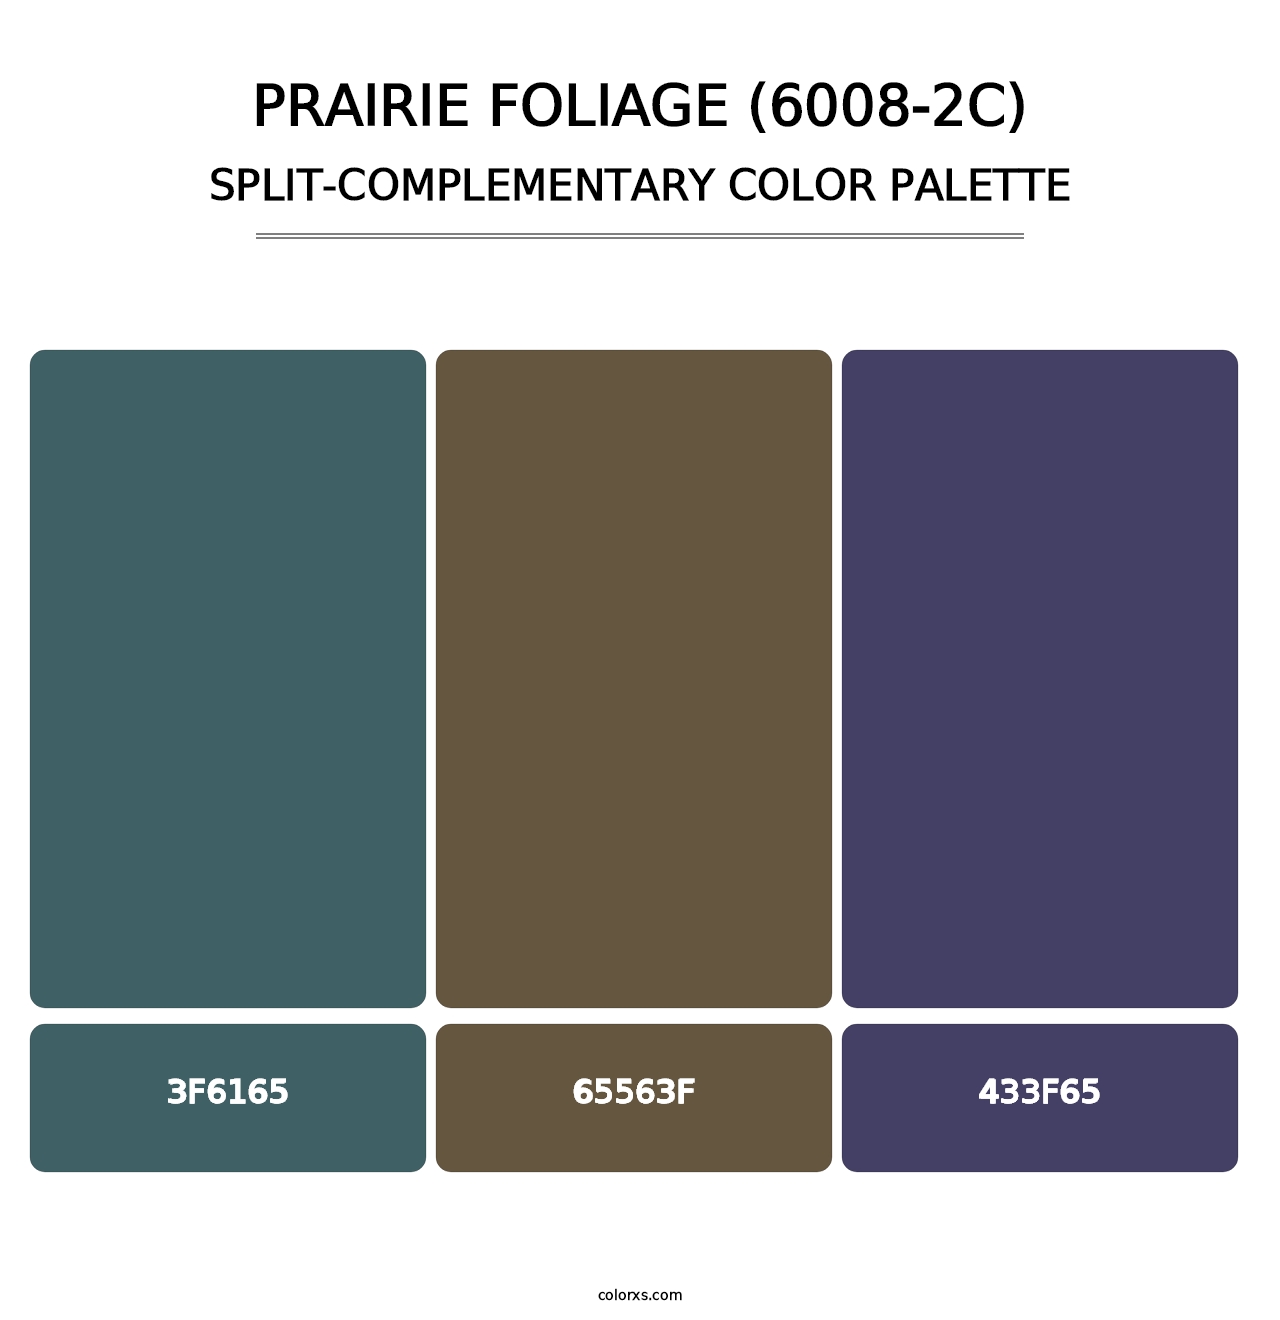 Prairie Foliage (6008-2C) - Split-Complementary Color Palette